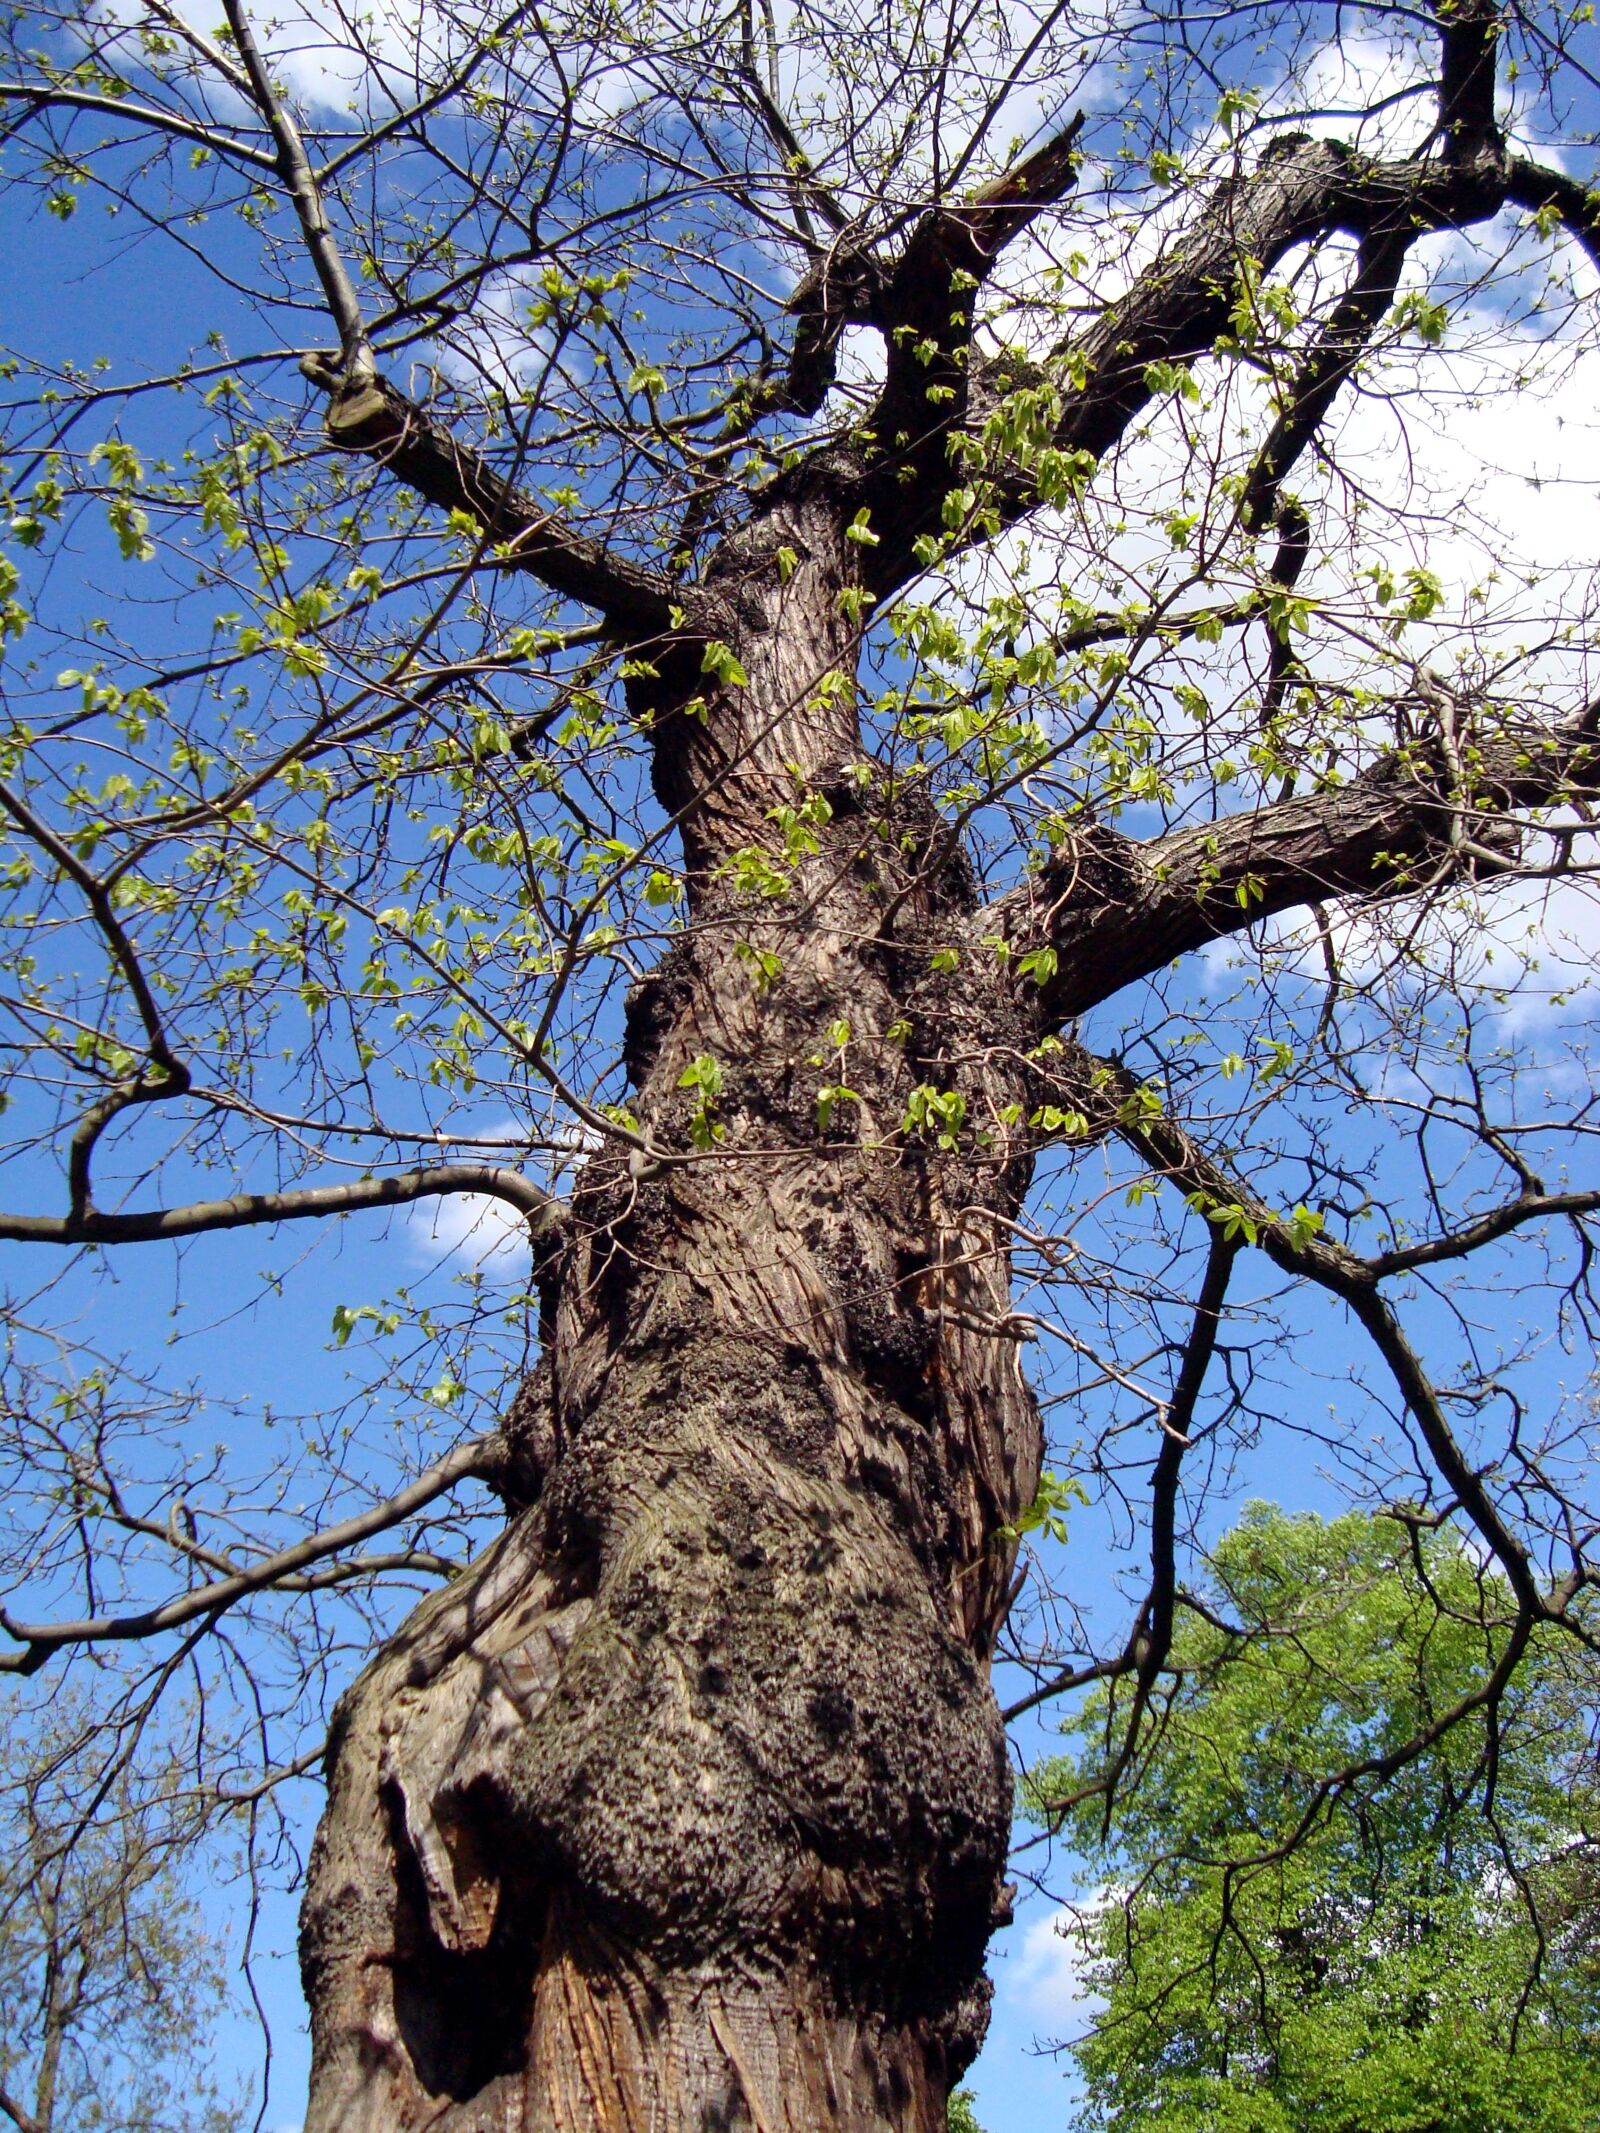 Sony Cyber-shot DSC-W110 sample photo. Oak tree, tree, summer photography